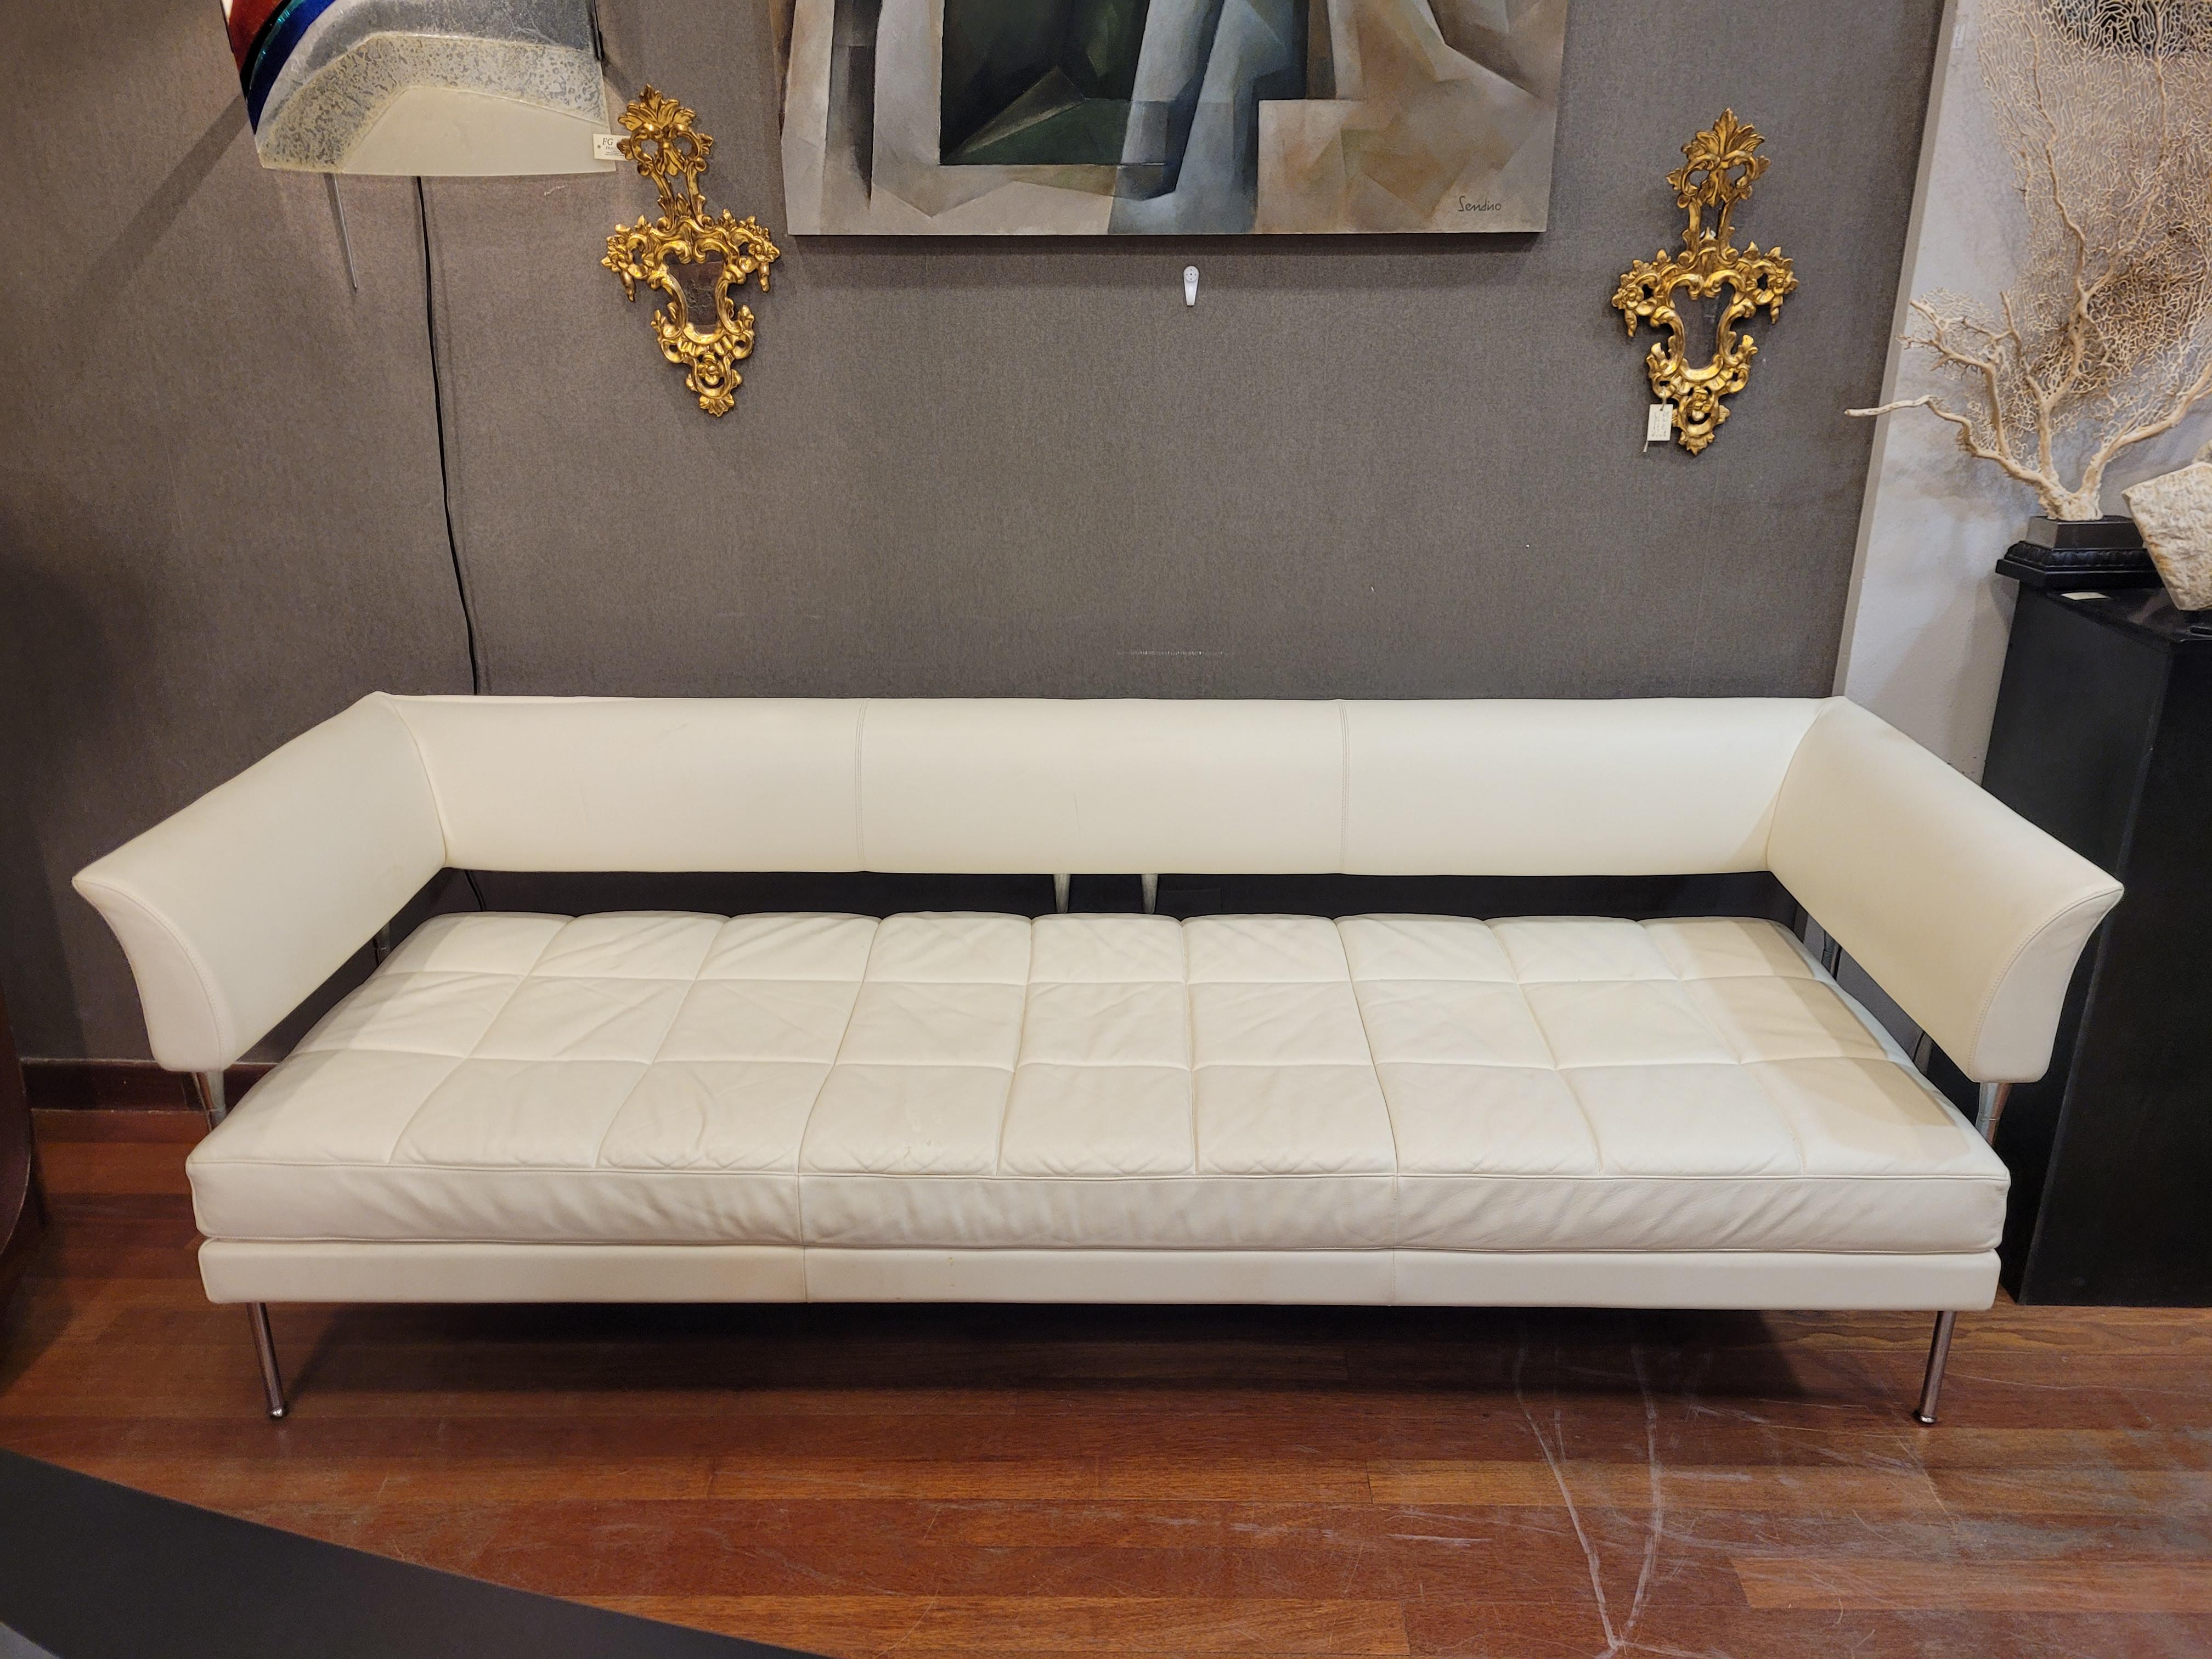 Hervorragendes Sofa des Modells Hydra Castor mit verchromtem Stahlgestell und weißem Lederbezug, entworfen von dem italienischen Architekten und Designer Luca Scacchetti für die renommierte Casa Poltrona Frau. Es ist ein schlankes und modernes